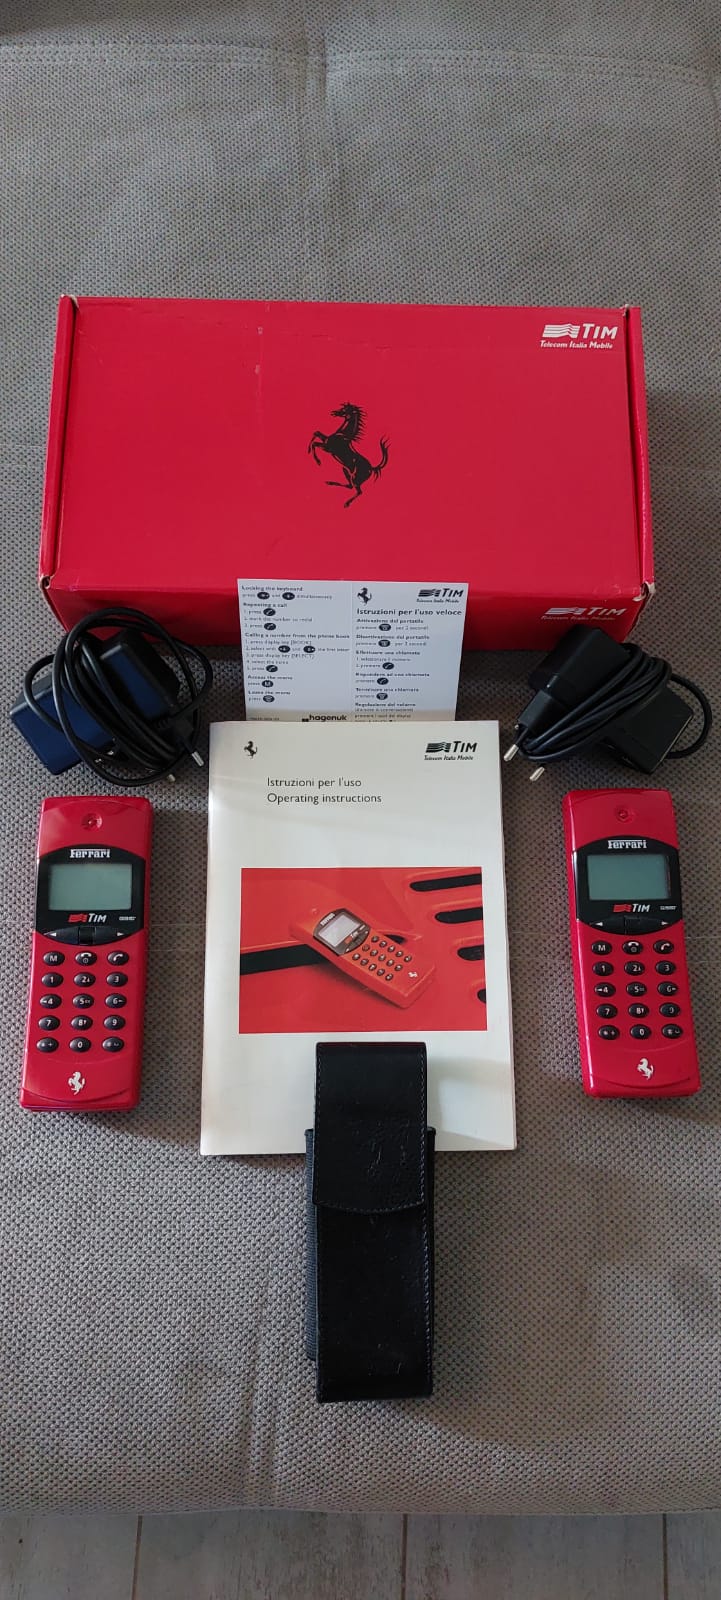 Ferrari F10 GSM hagenuk TIM phones